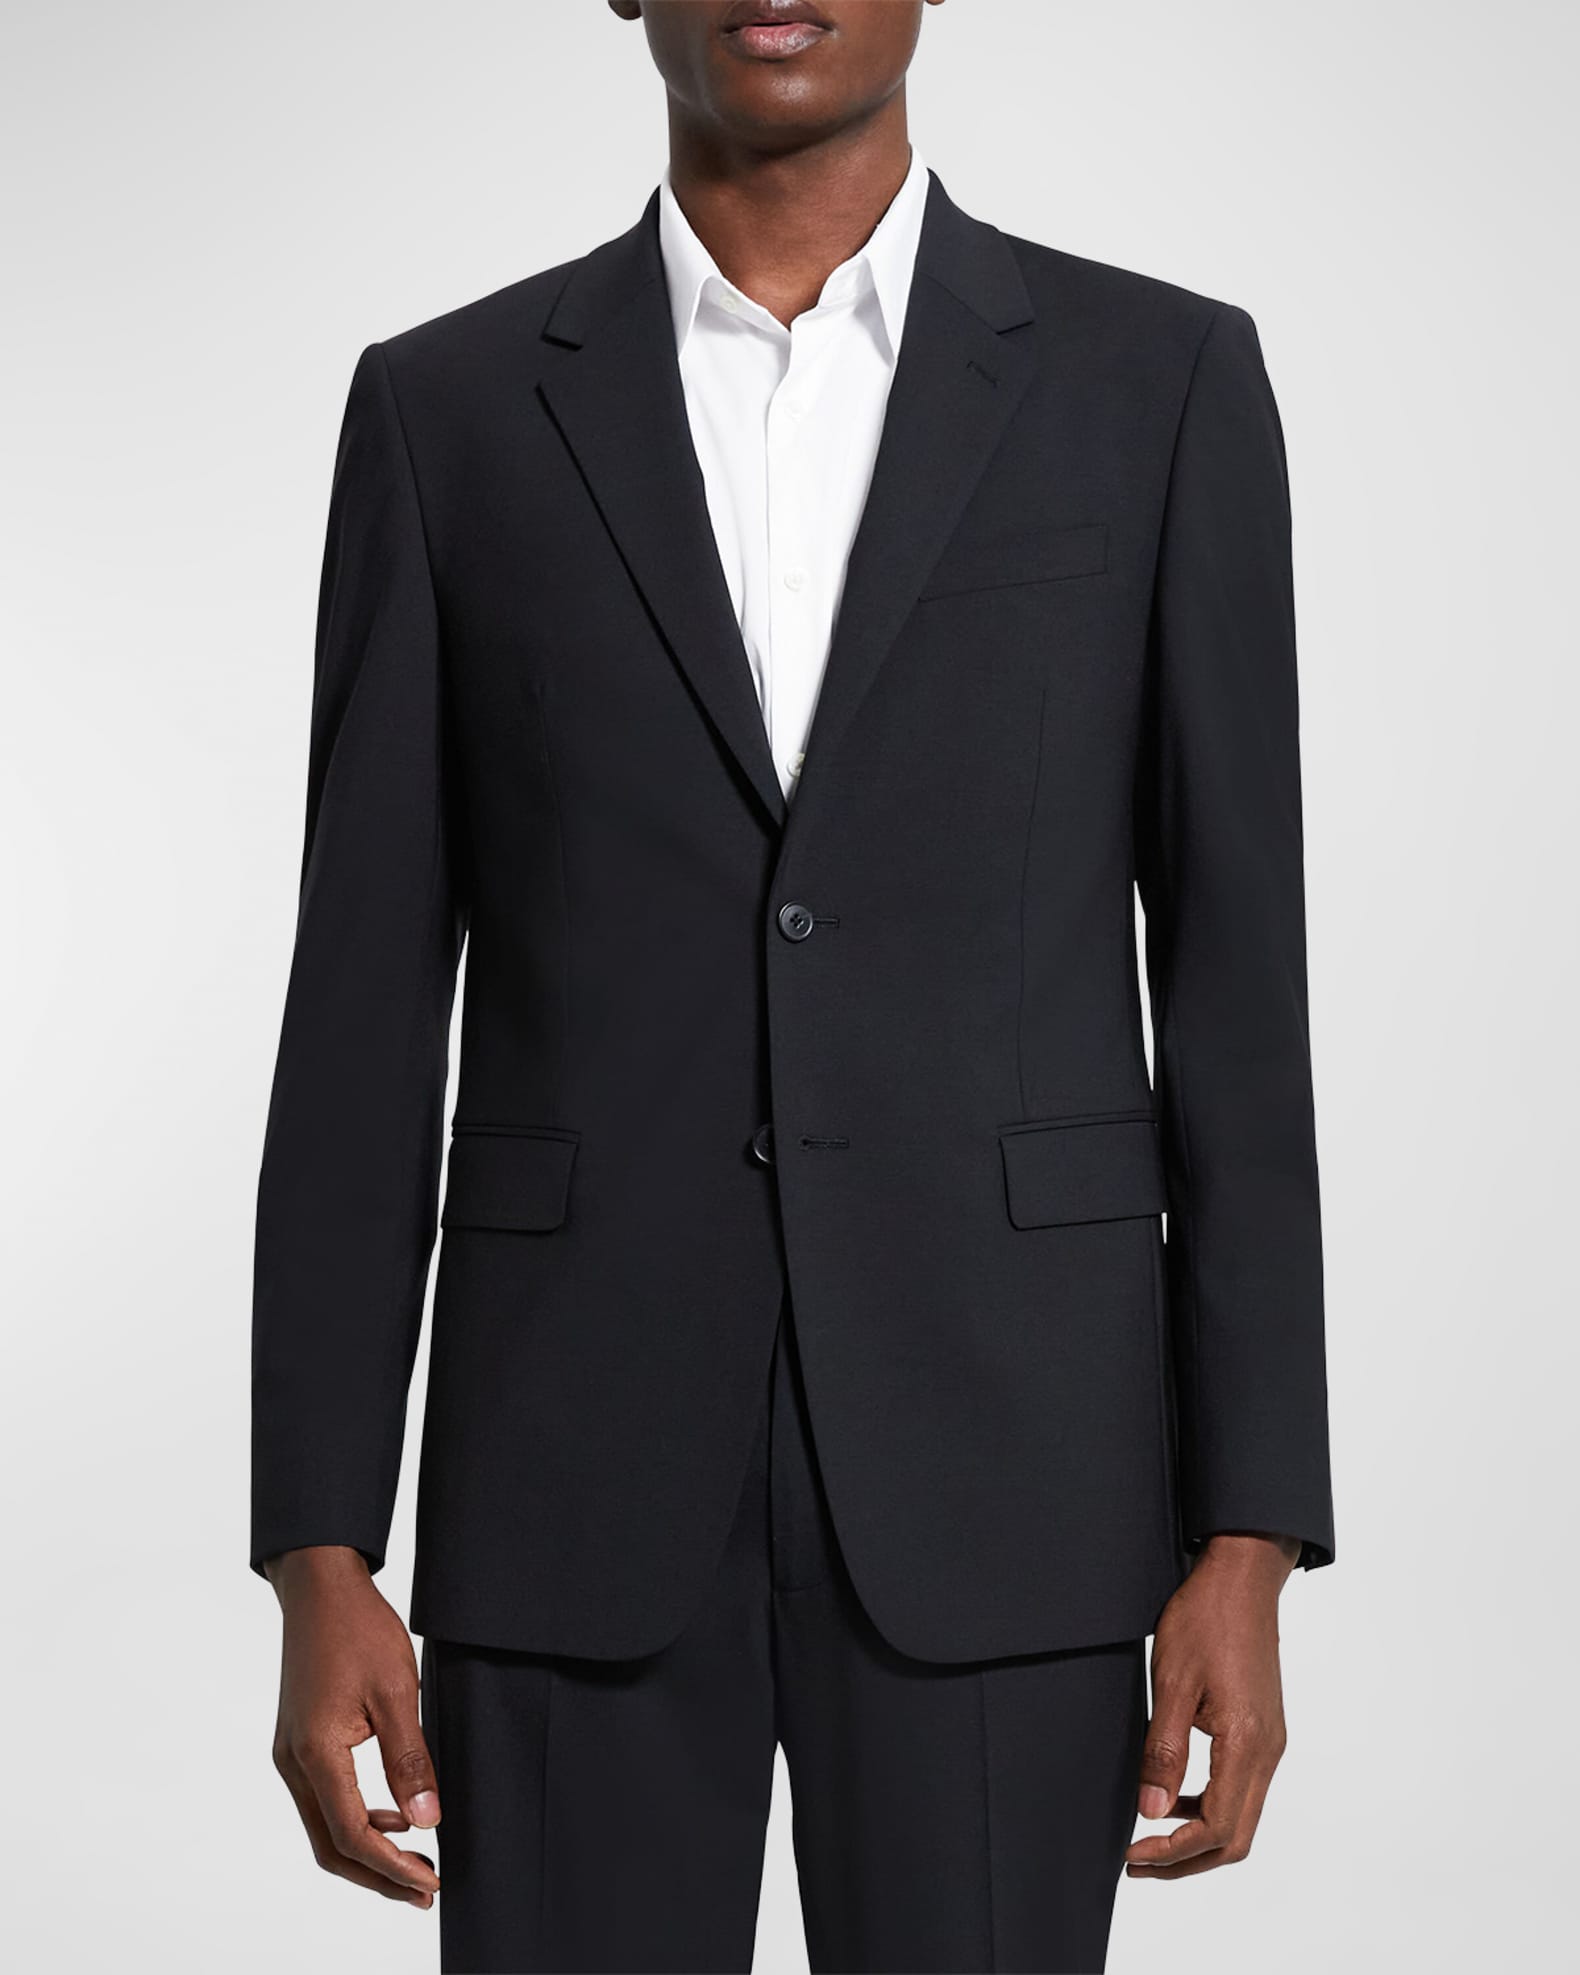 Louis Vuitton Deconstructed Notch-Lapel Sport Coat - Grey Suiting, Clothing  - LOU223317